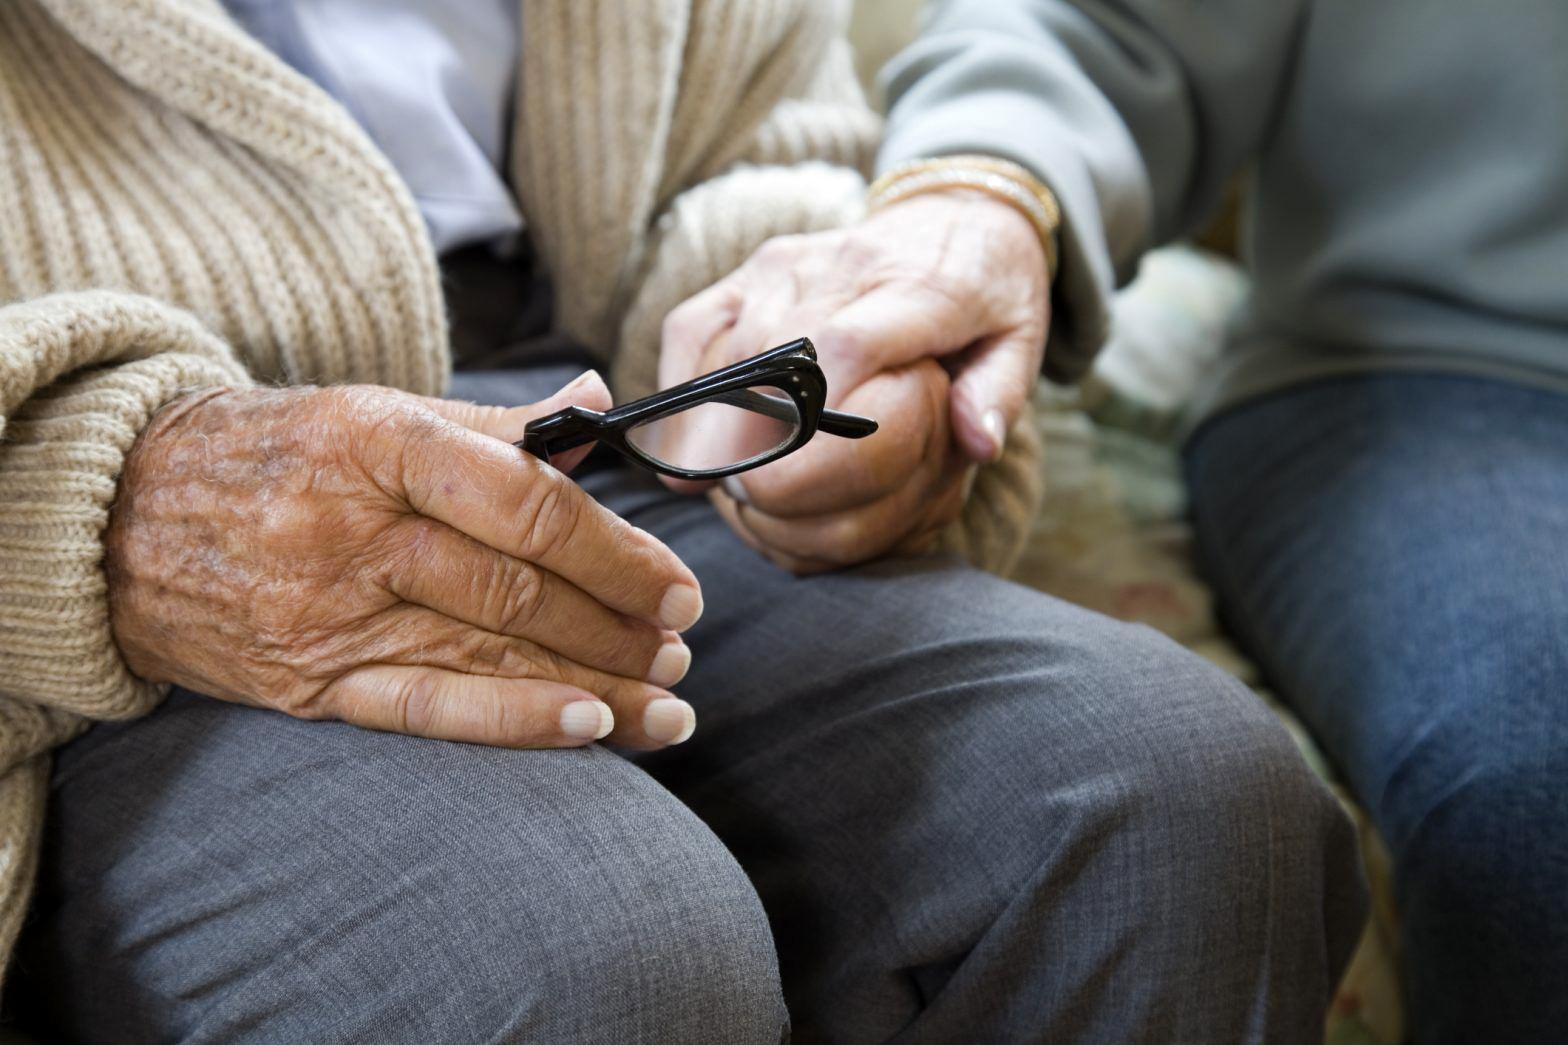 افزایش سن بازنشستگی اجباری است یا اختیاری؟ | خبر مهم تامین اجتماعی +فیلم
